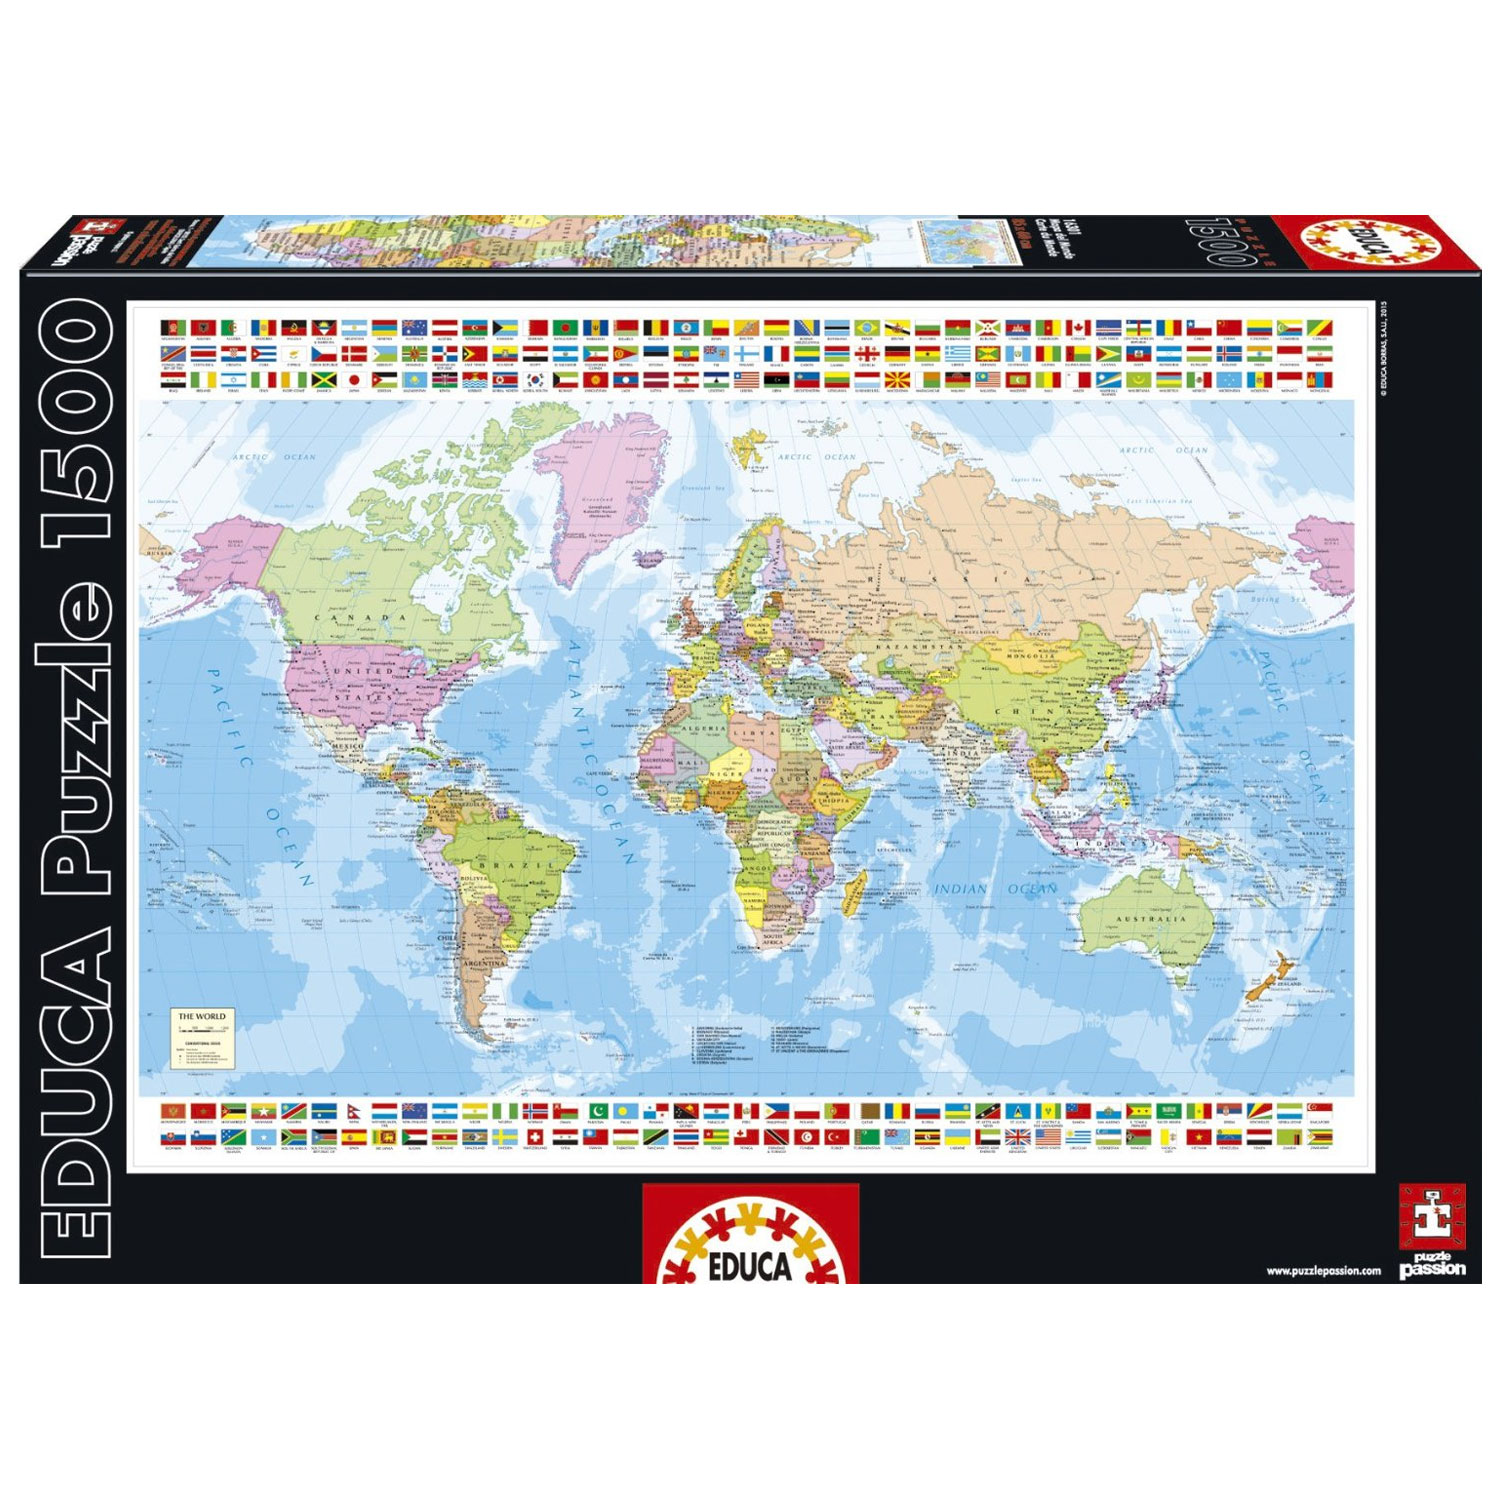 Educa Carte du monde - 1500 pièces - Puzzles123